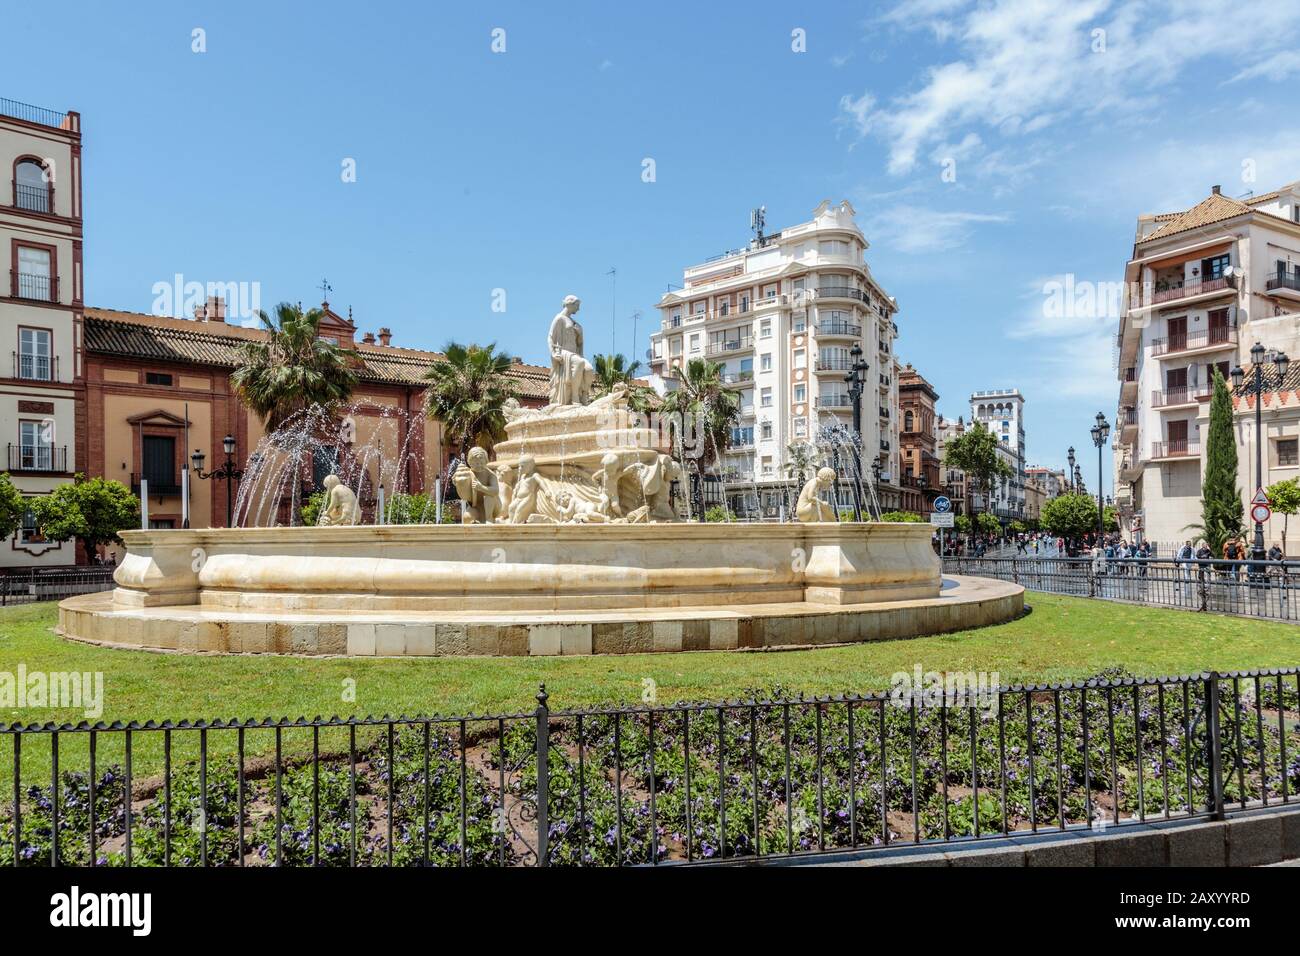 Der Wasserbrunnen von Hispalis mit nereiden Meeresnymphen in der Nähe von Puerta de Jerez ( Jerez Tor) in Sevilla, Spanien Stockfoto